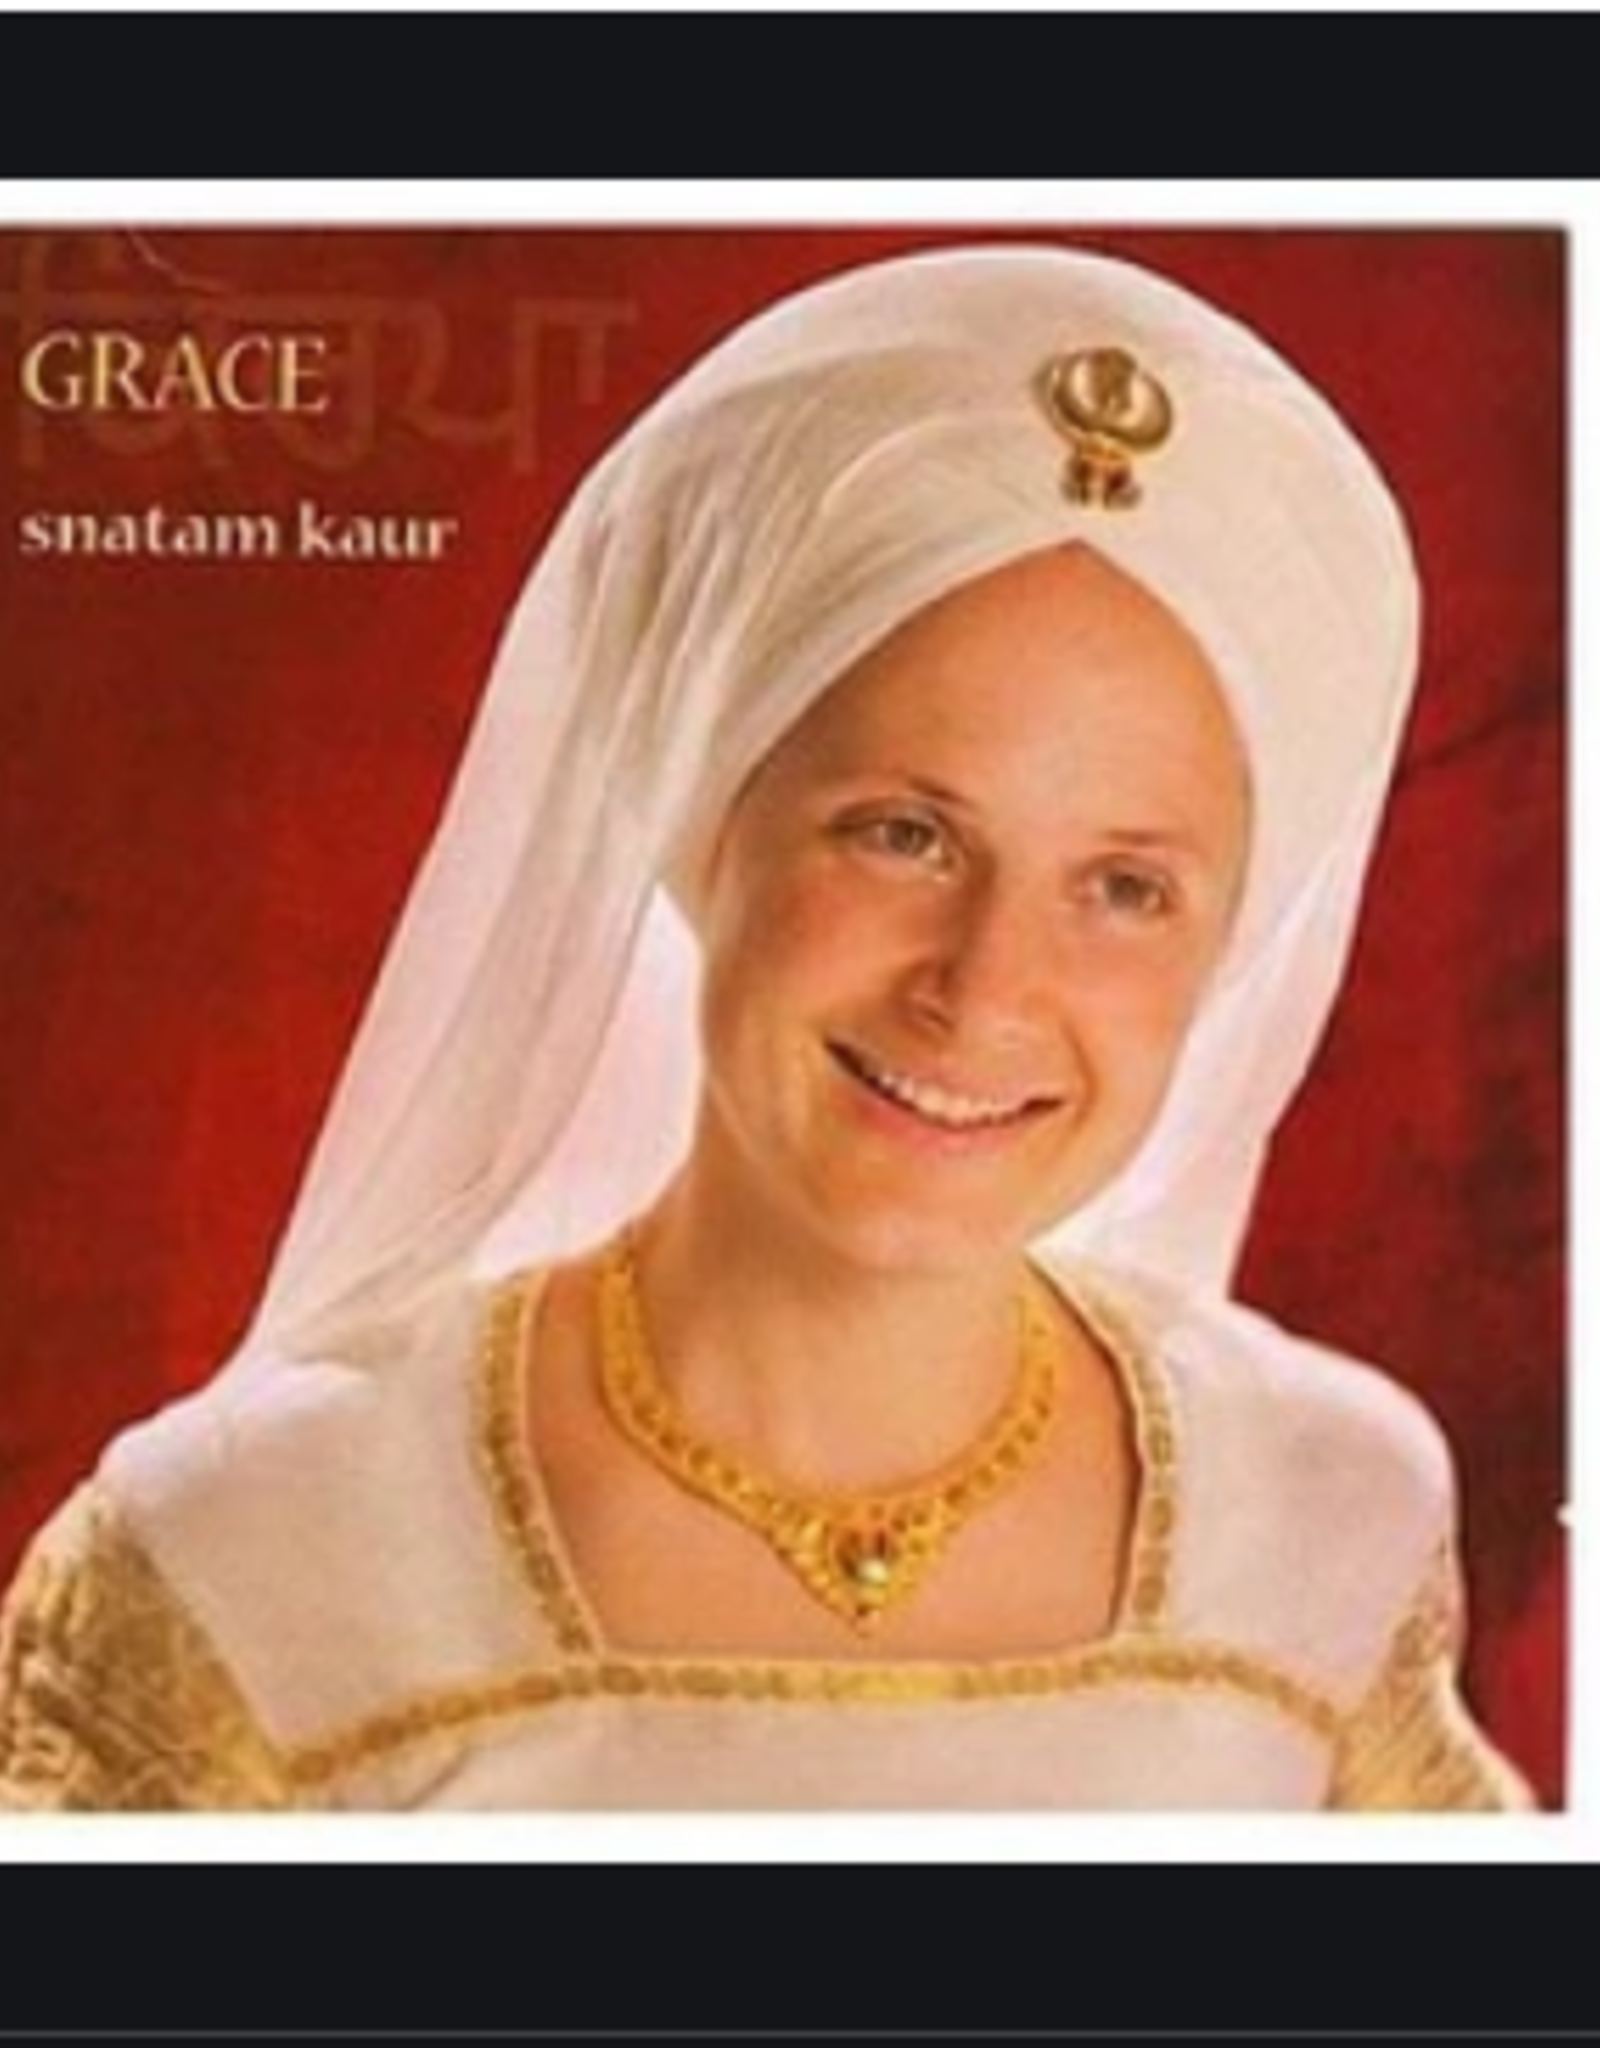 Snatam Kaur Grace CD by Snatam Kaur